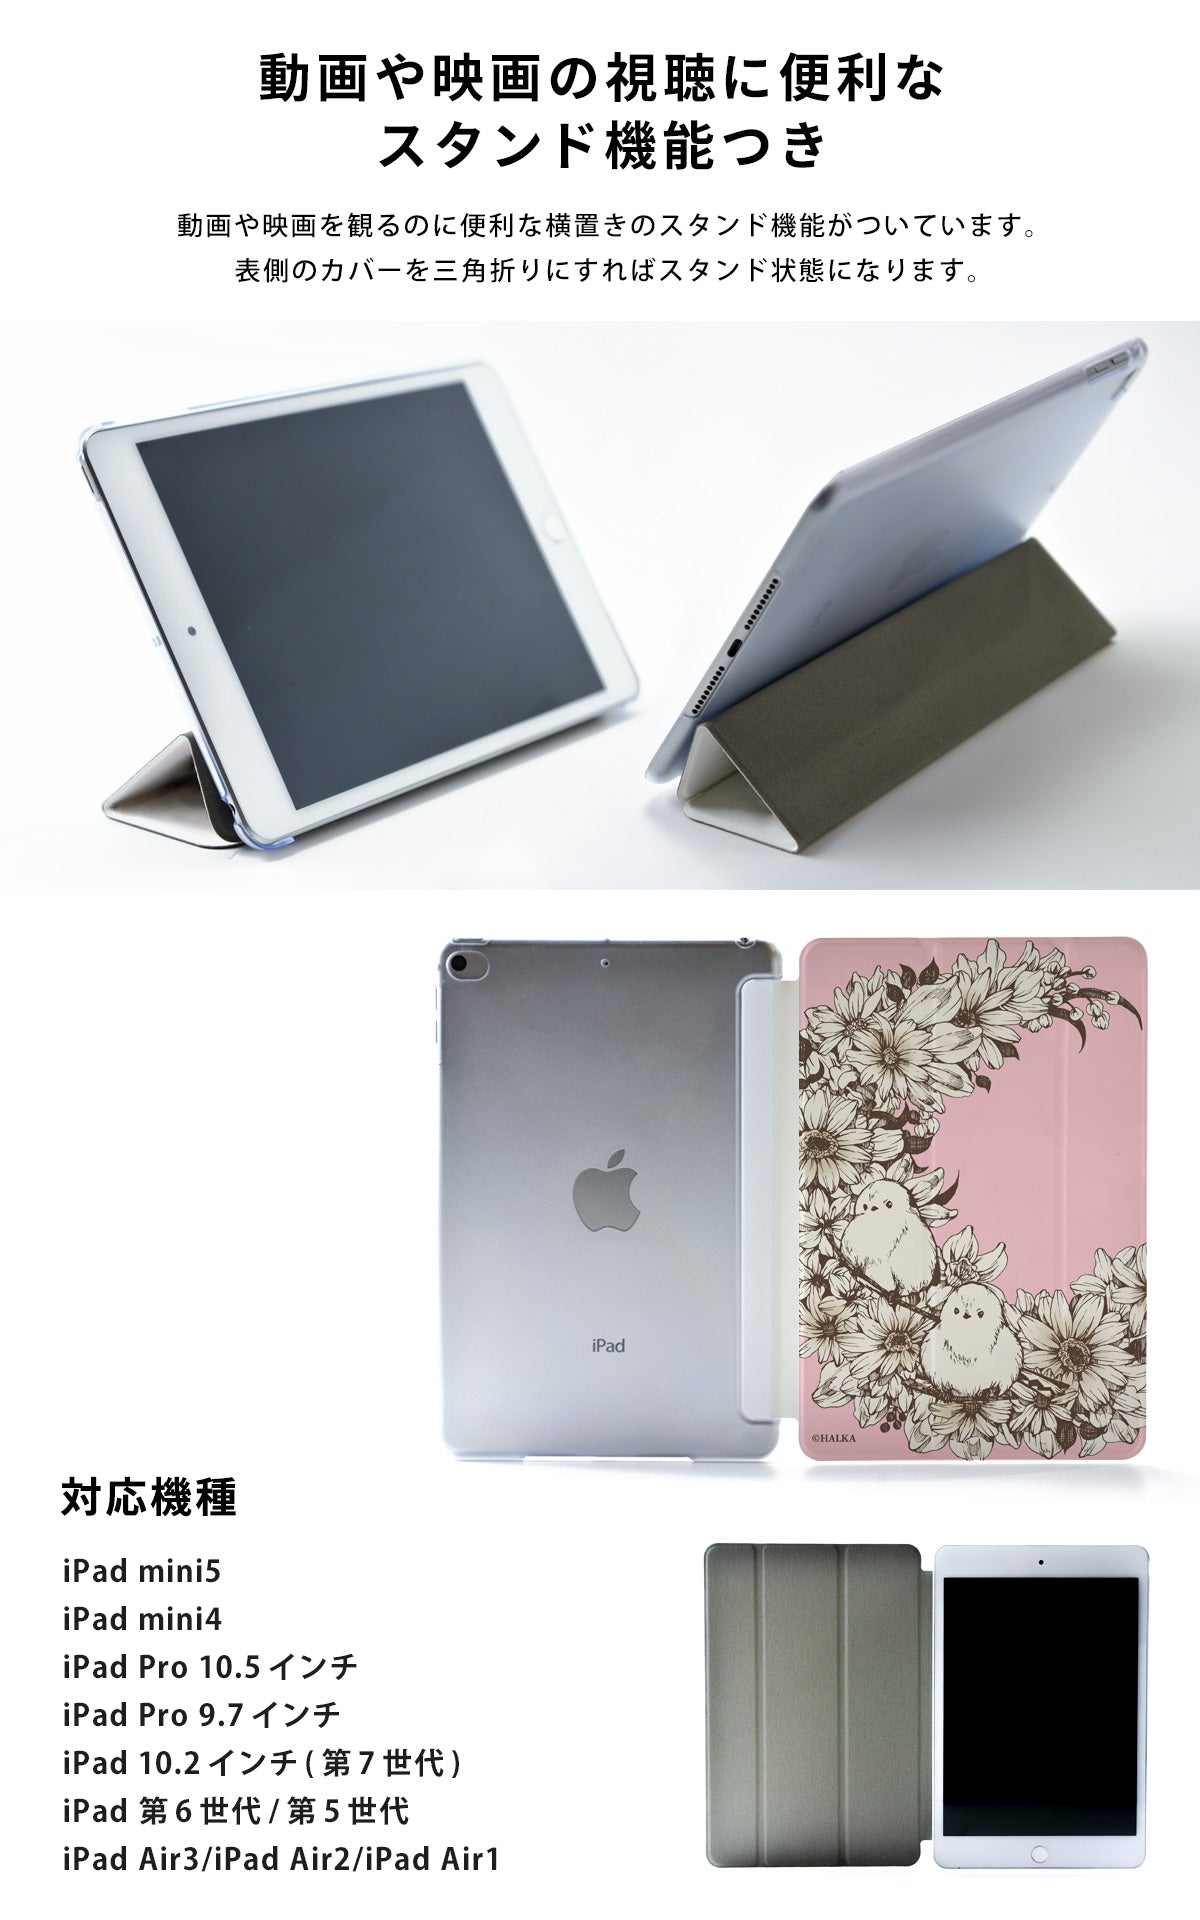 iPad Air2 Air1 iPad 9.7インチ 透明 三つ折りスタンド - iPadアクセサリー